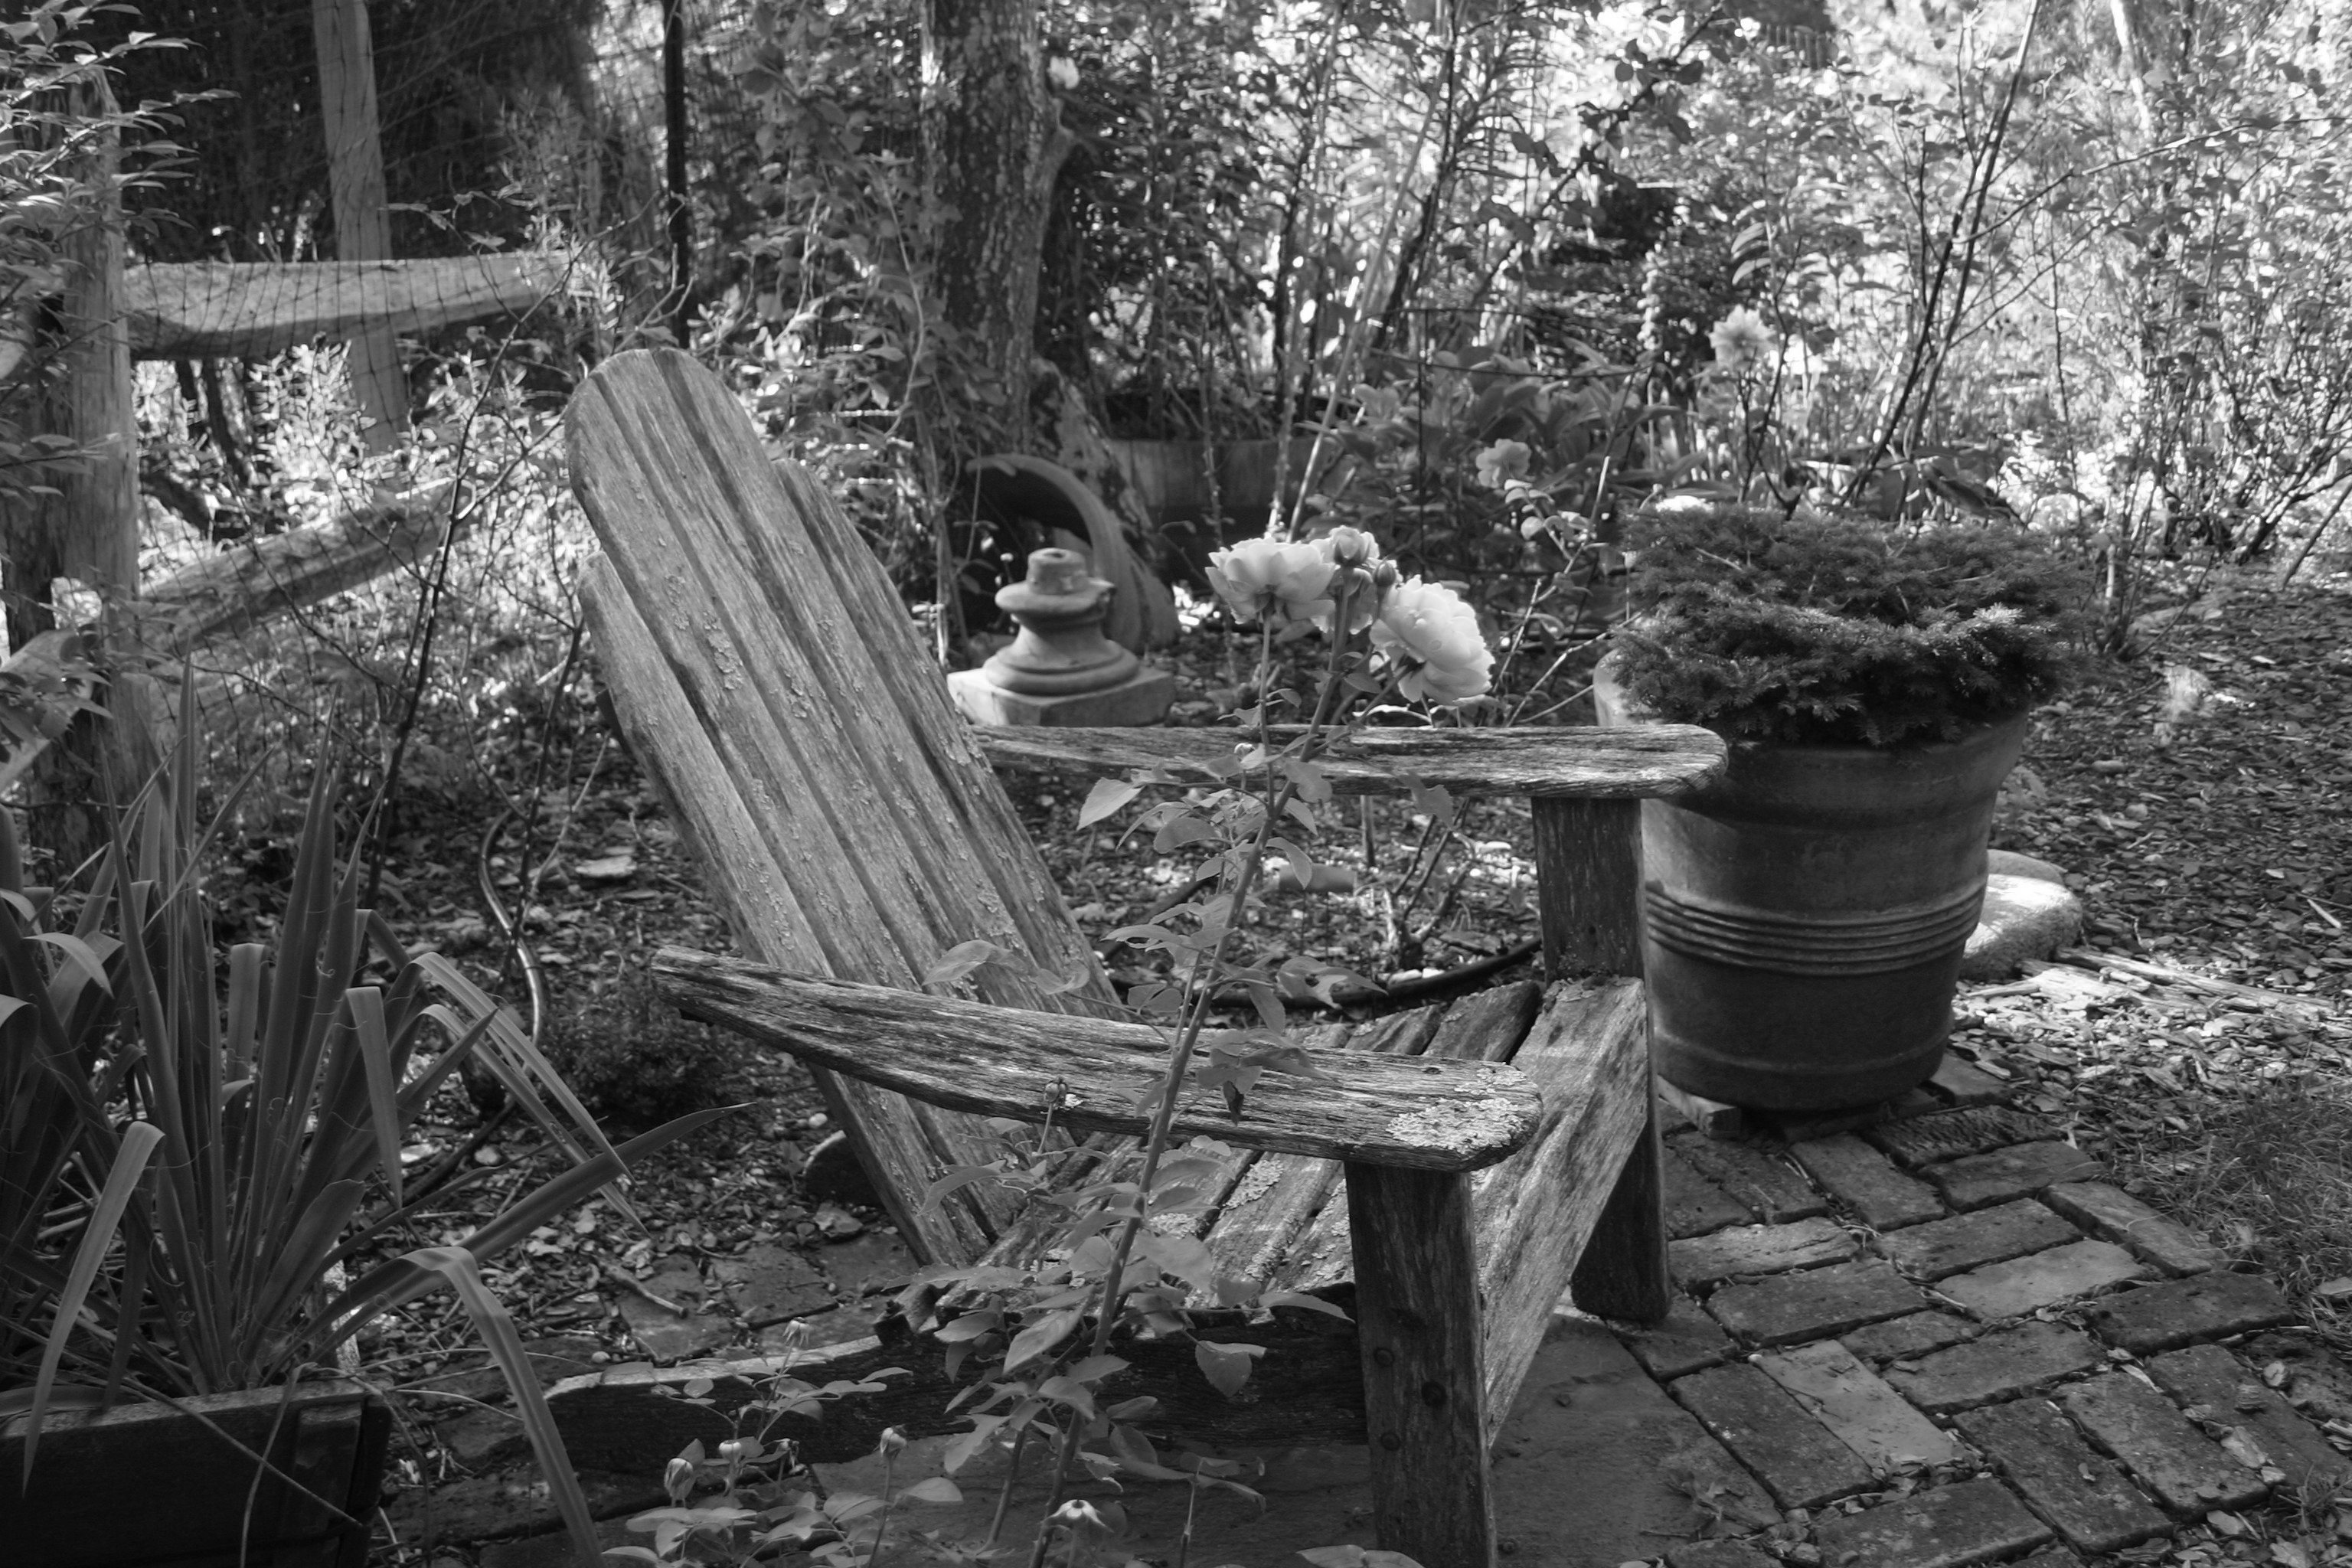 black and white image of Adirondak chairs